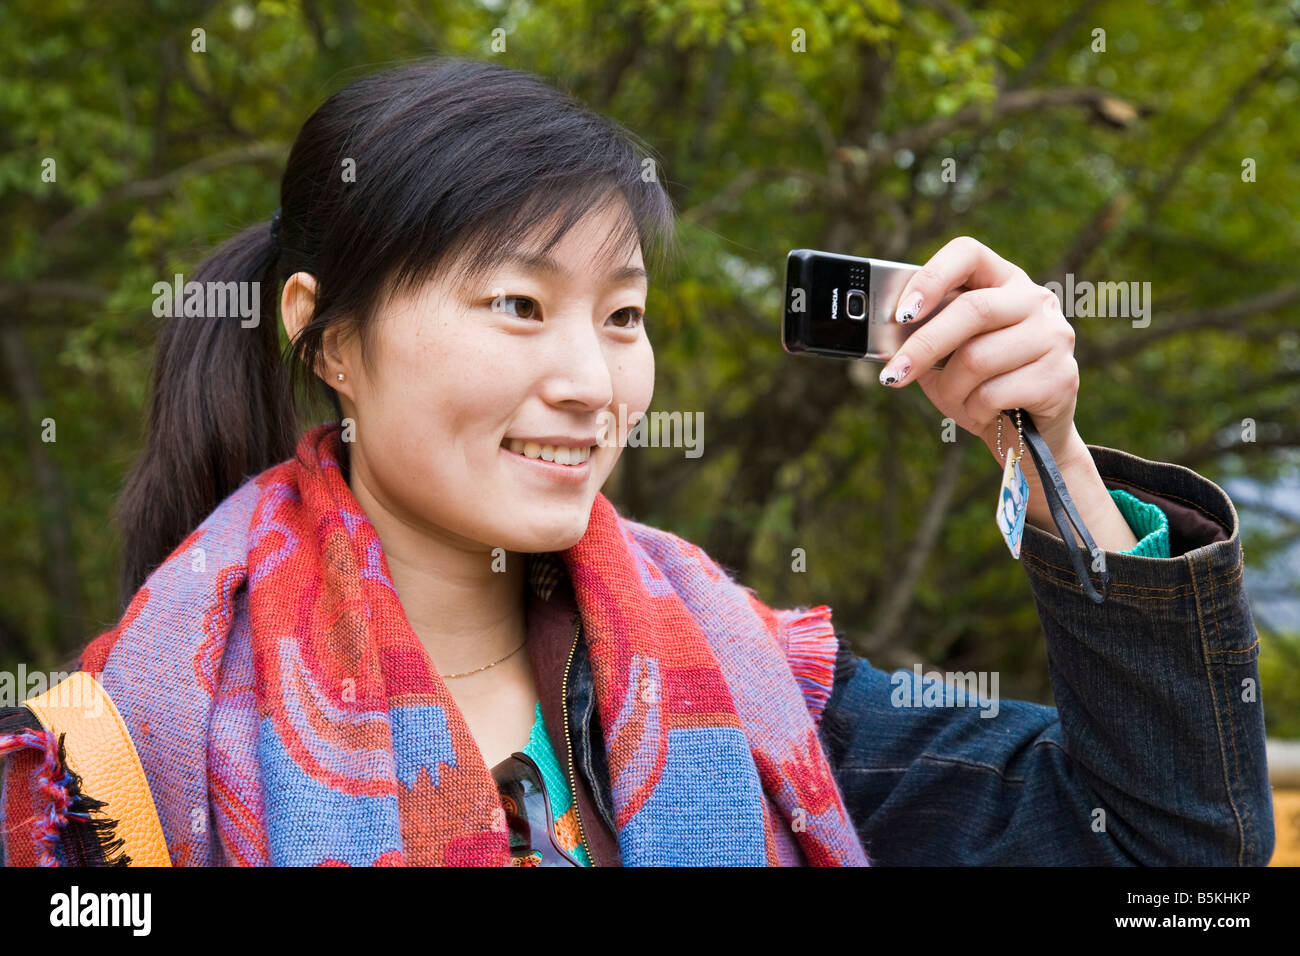 Jeune femme chinoise oriental asiatique avec écharpe aux couleurs vives en  photographie à l'aide d'Nokia cellphone Huanglong Chine JMH3531 Photo Stock  - Alamy